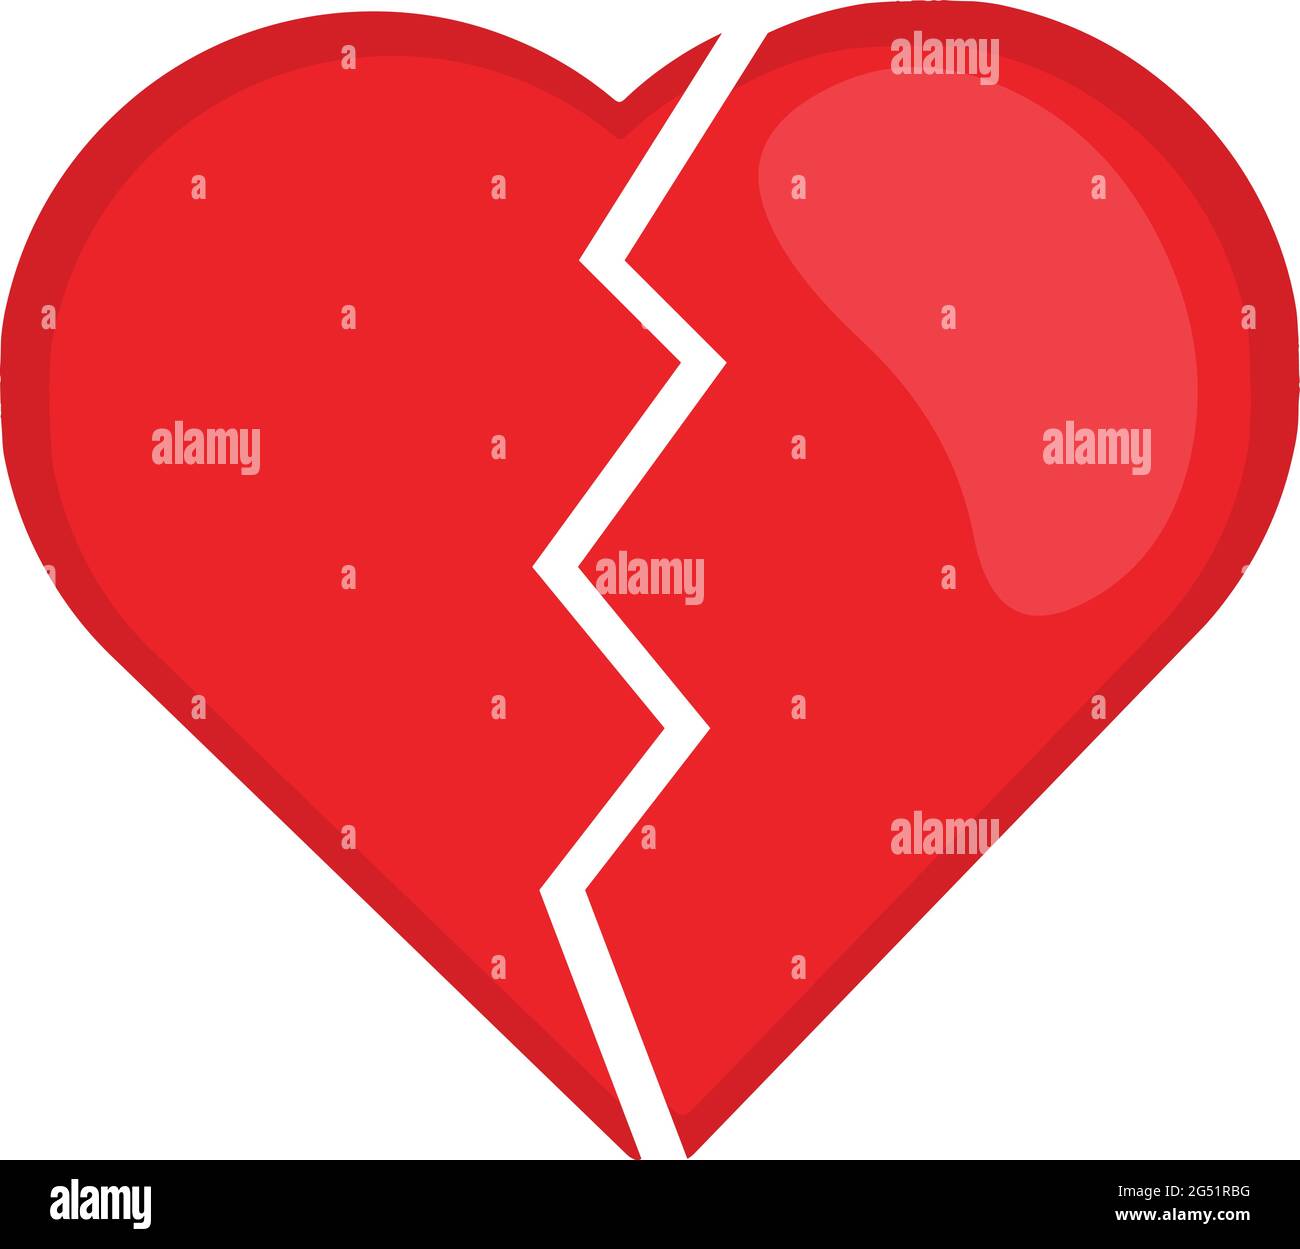 Vektor-Emoticon-Illustration eines gebrochenen Herzens Stock Vektor